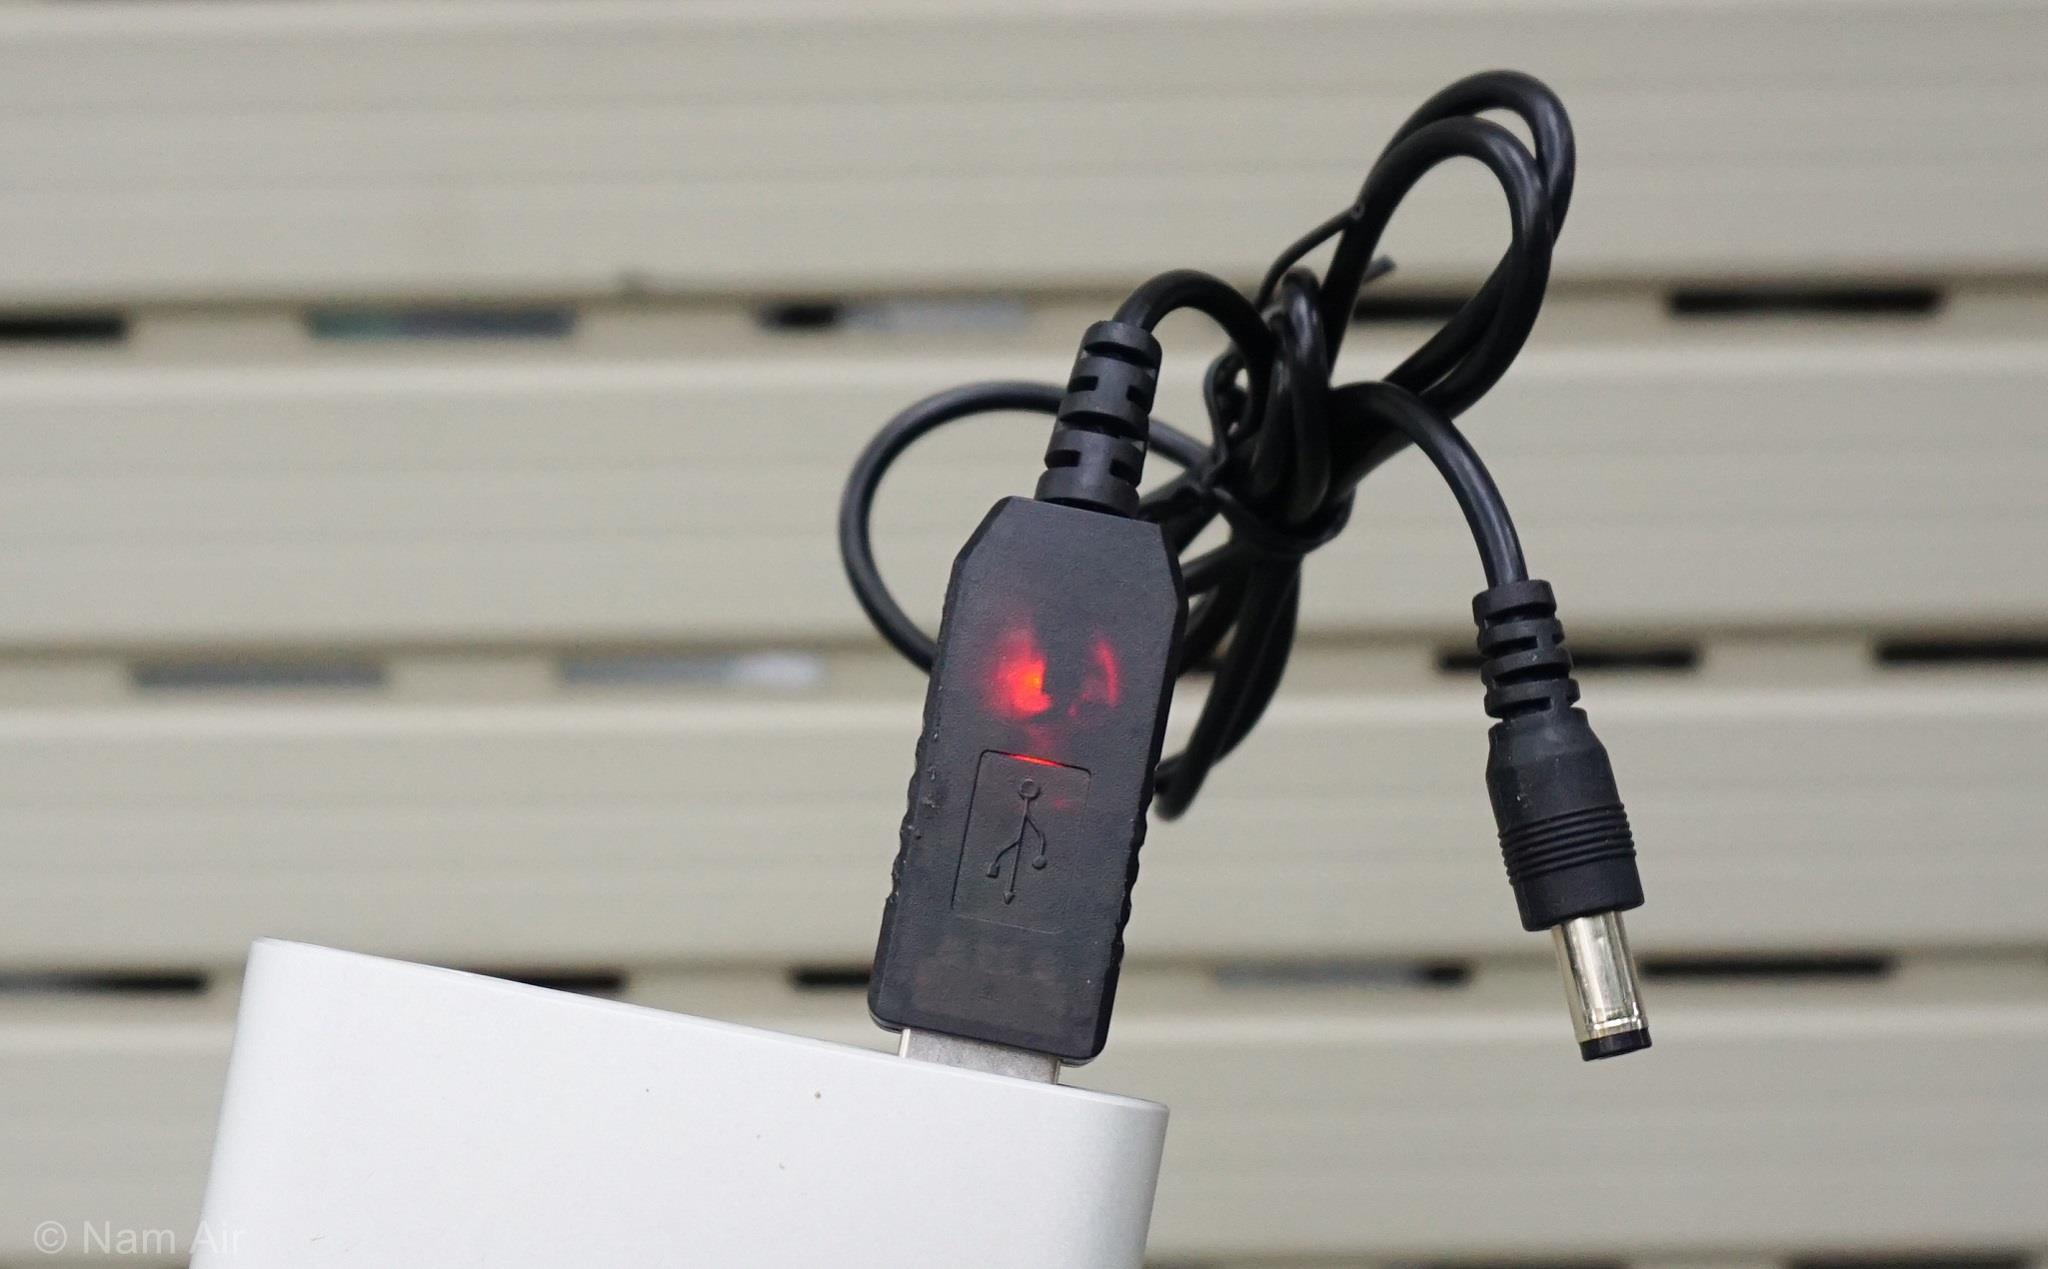 Trên tay đồ rẻ: Cáp USB ra điện 12VDC giá 20k, cấp nguồn cho modem, router, camera wifi khi cúp điện